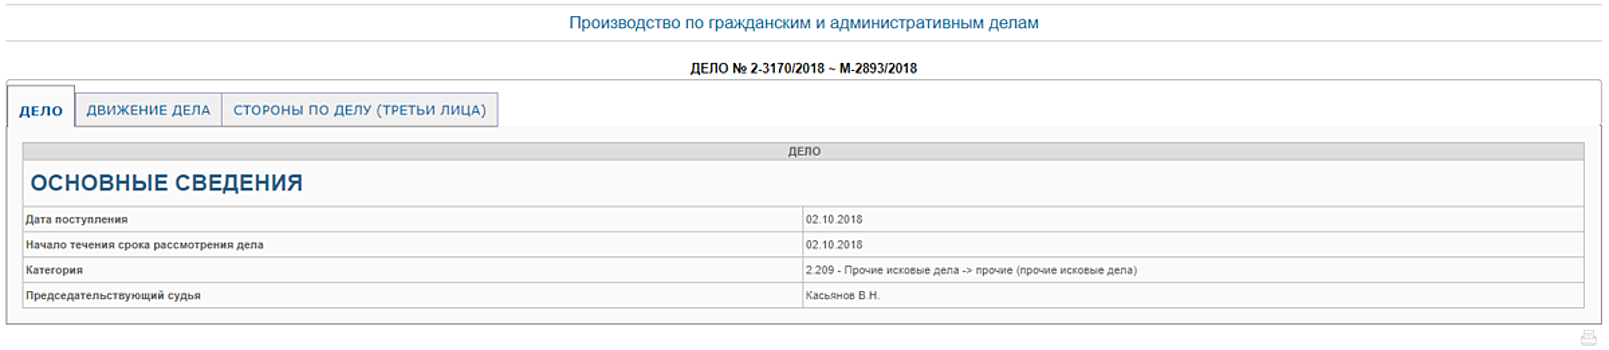 Королевский суд принял к рассмотрению иск против Дмитрия Киселева